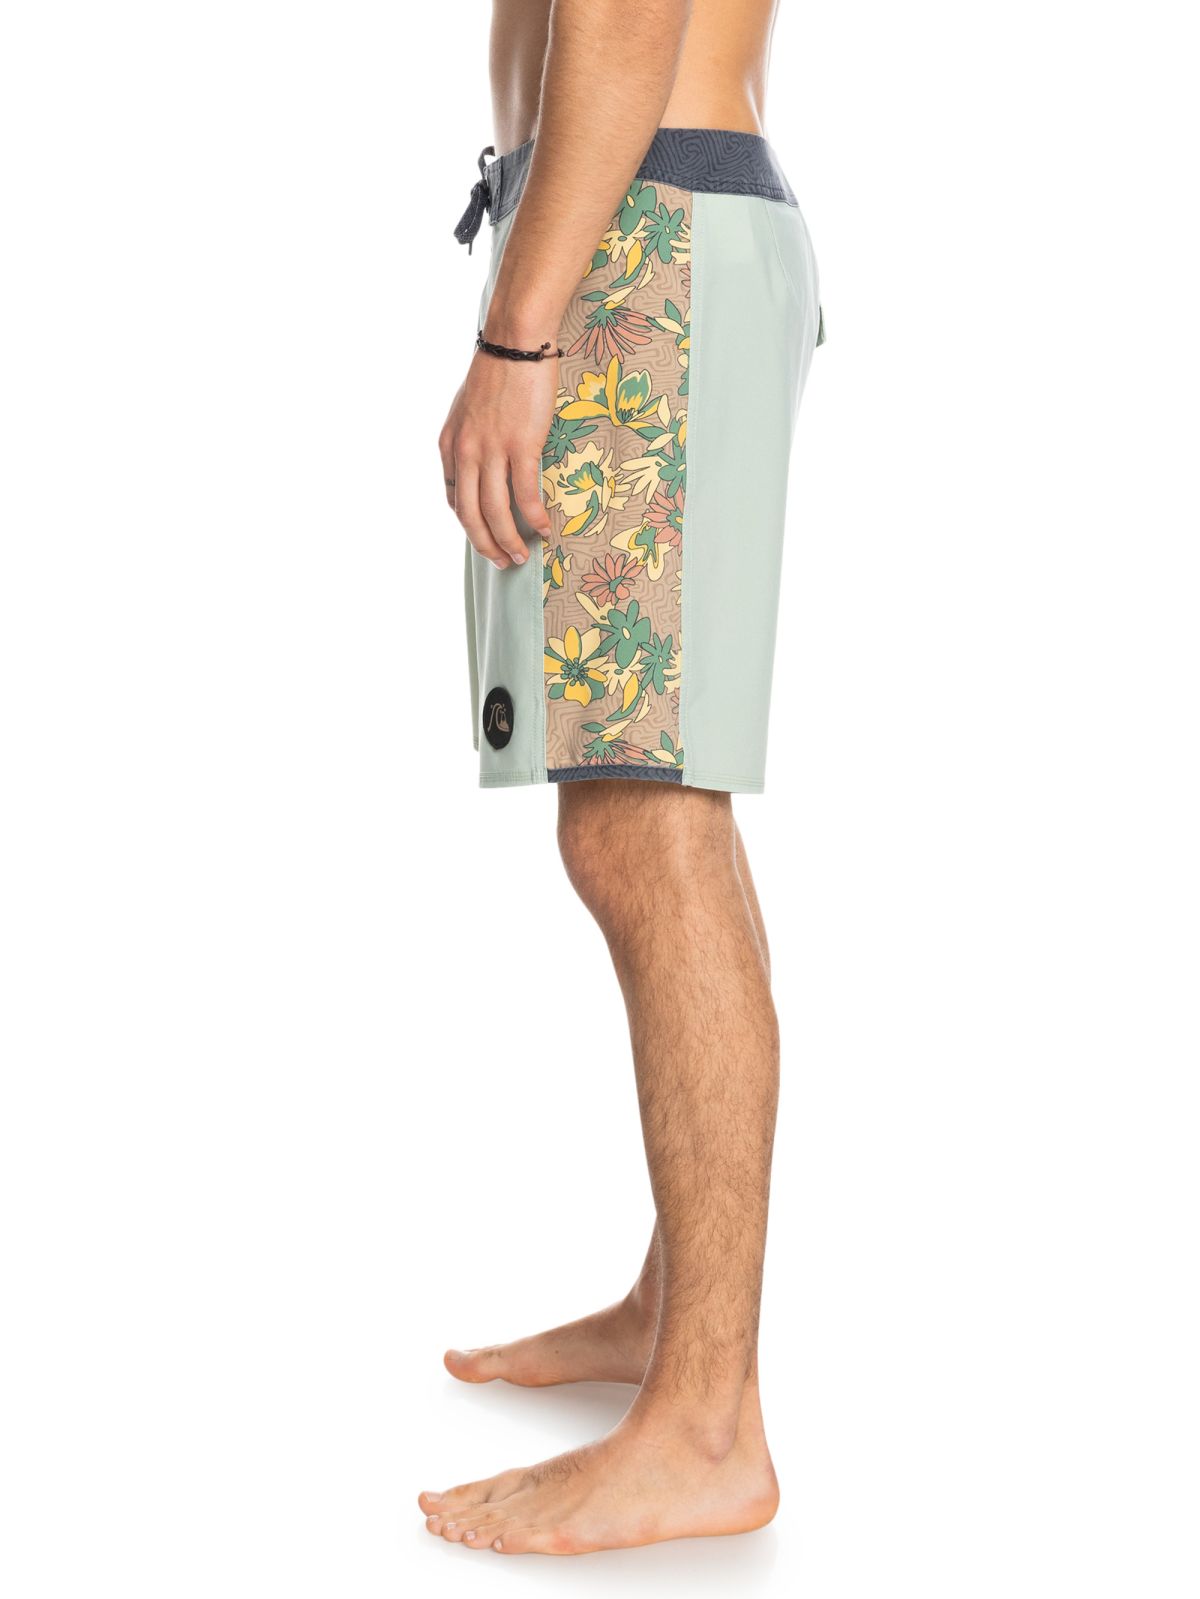  מכנסי בגד ים עם לוגו של QUIKSILVER